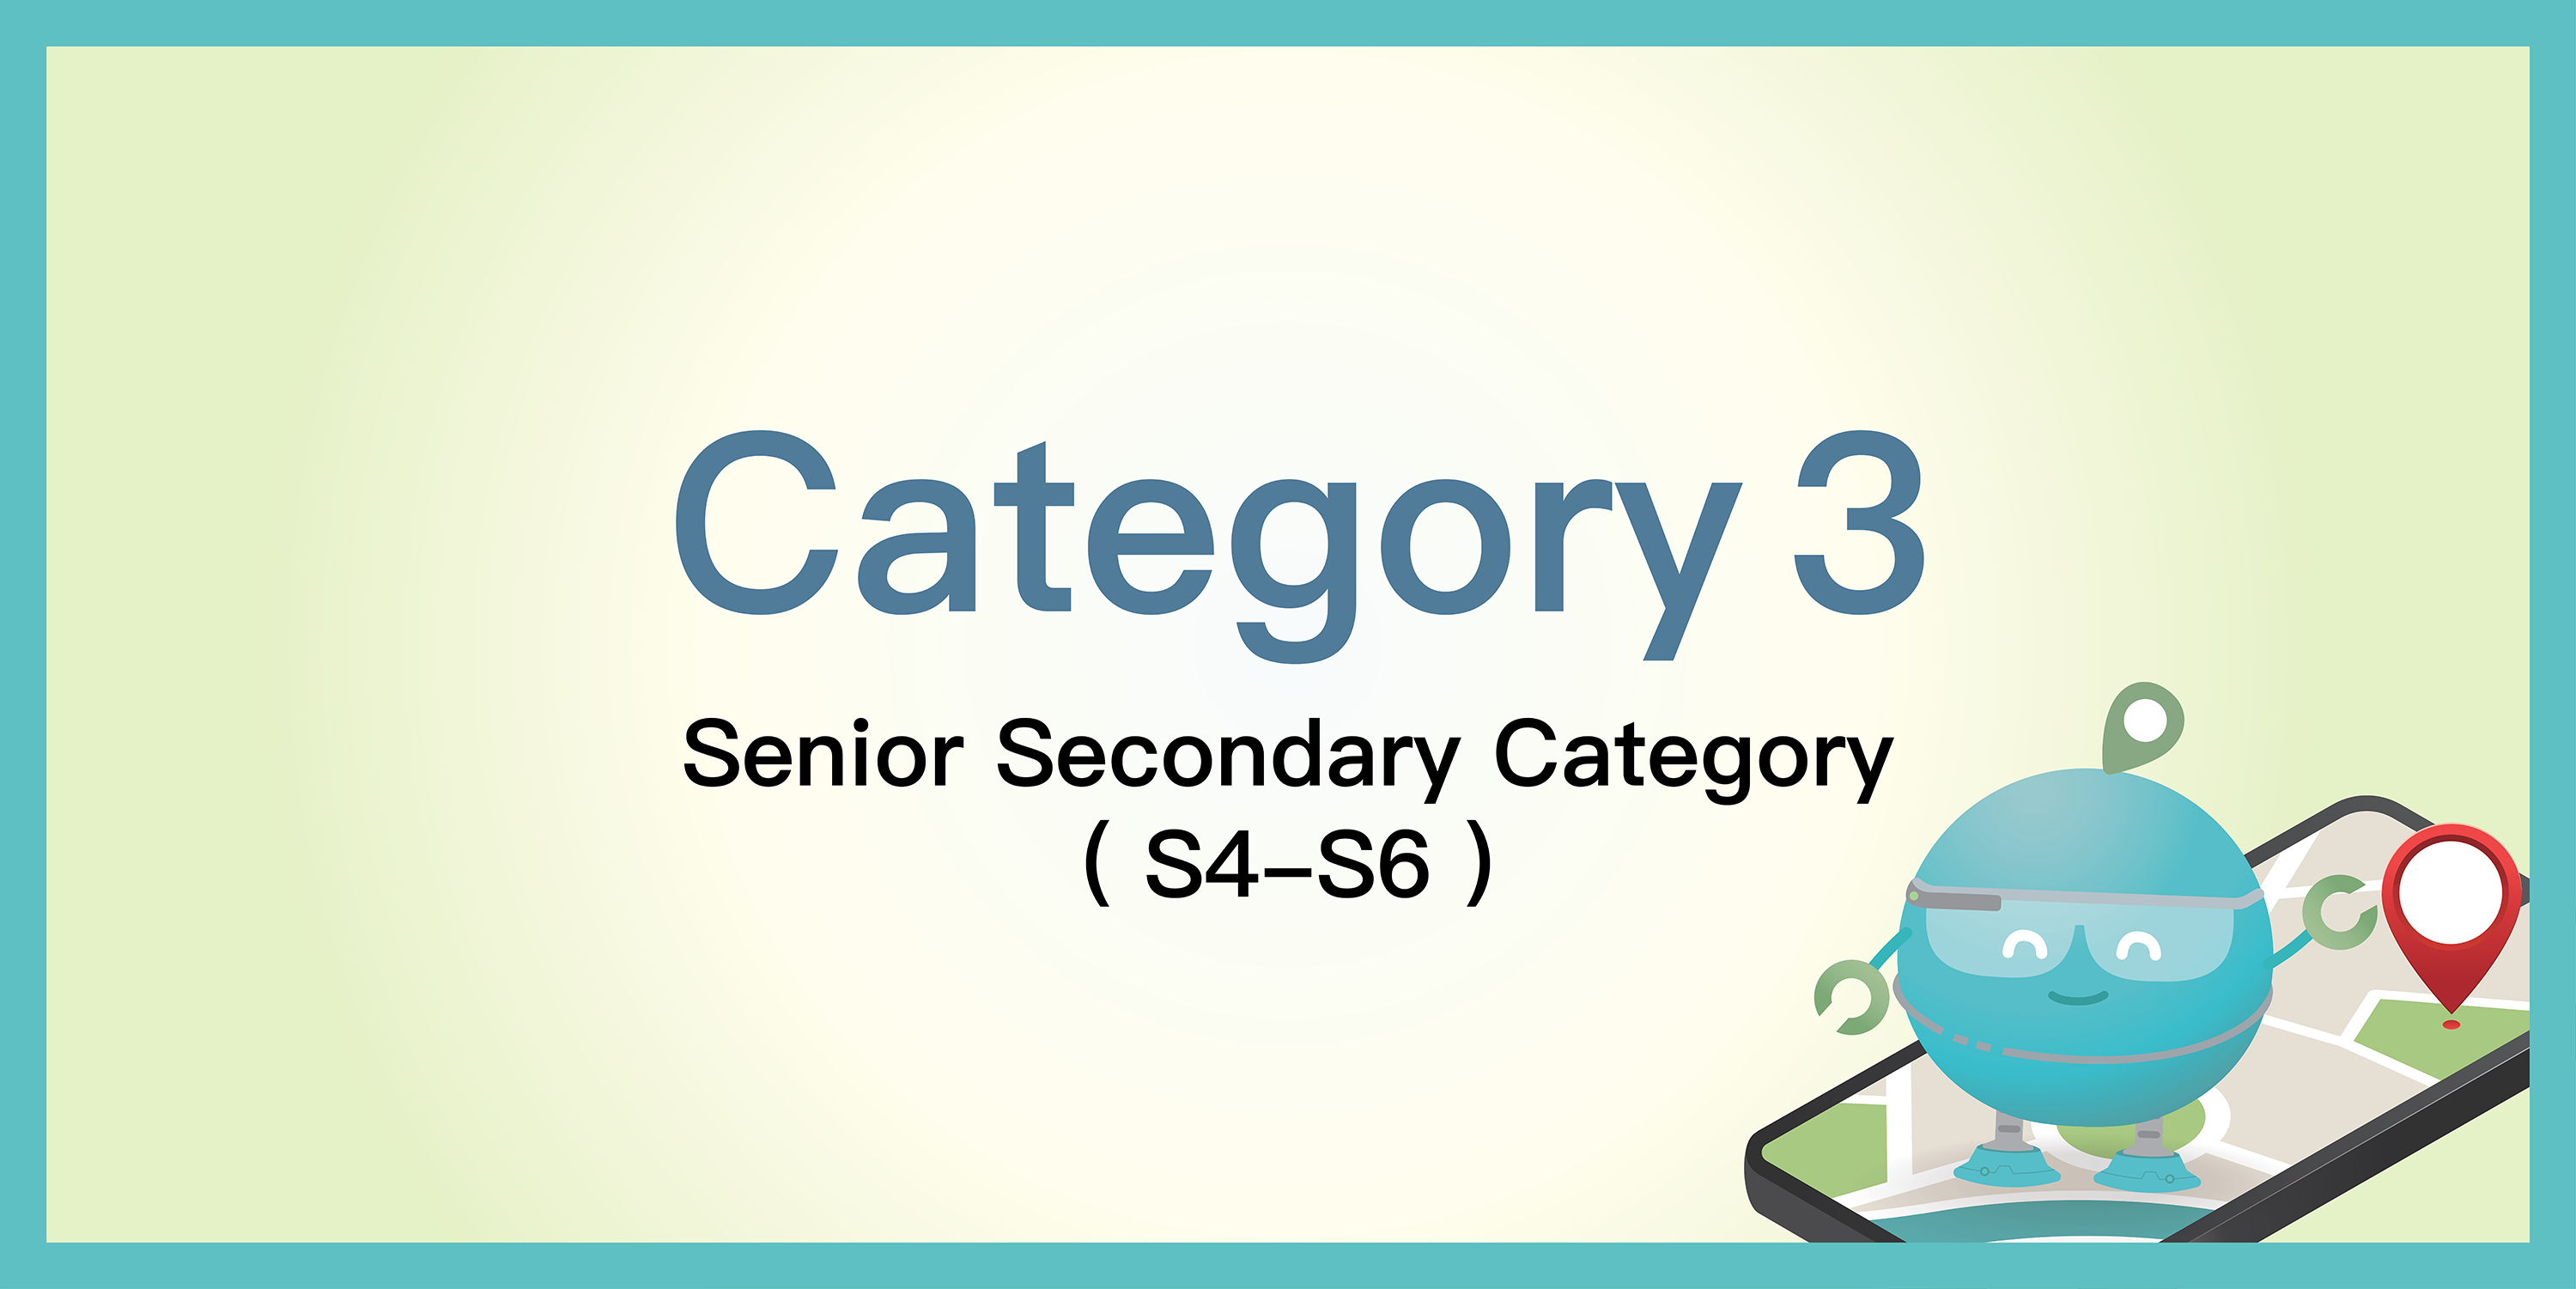 Senior Secondary Category